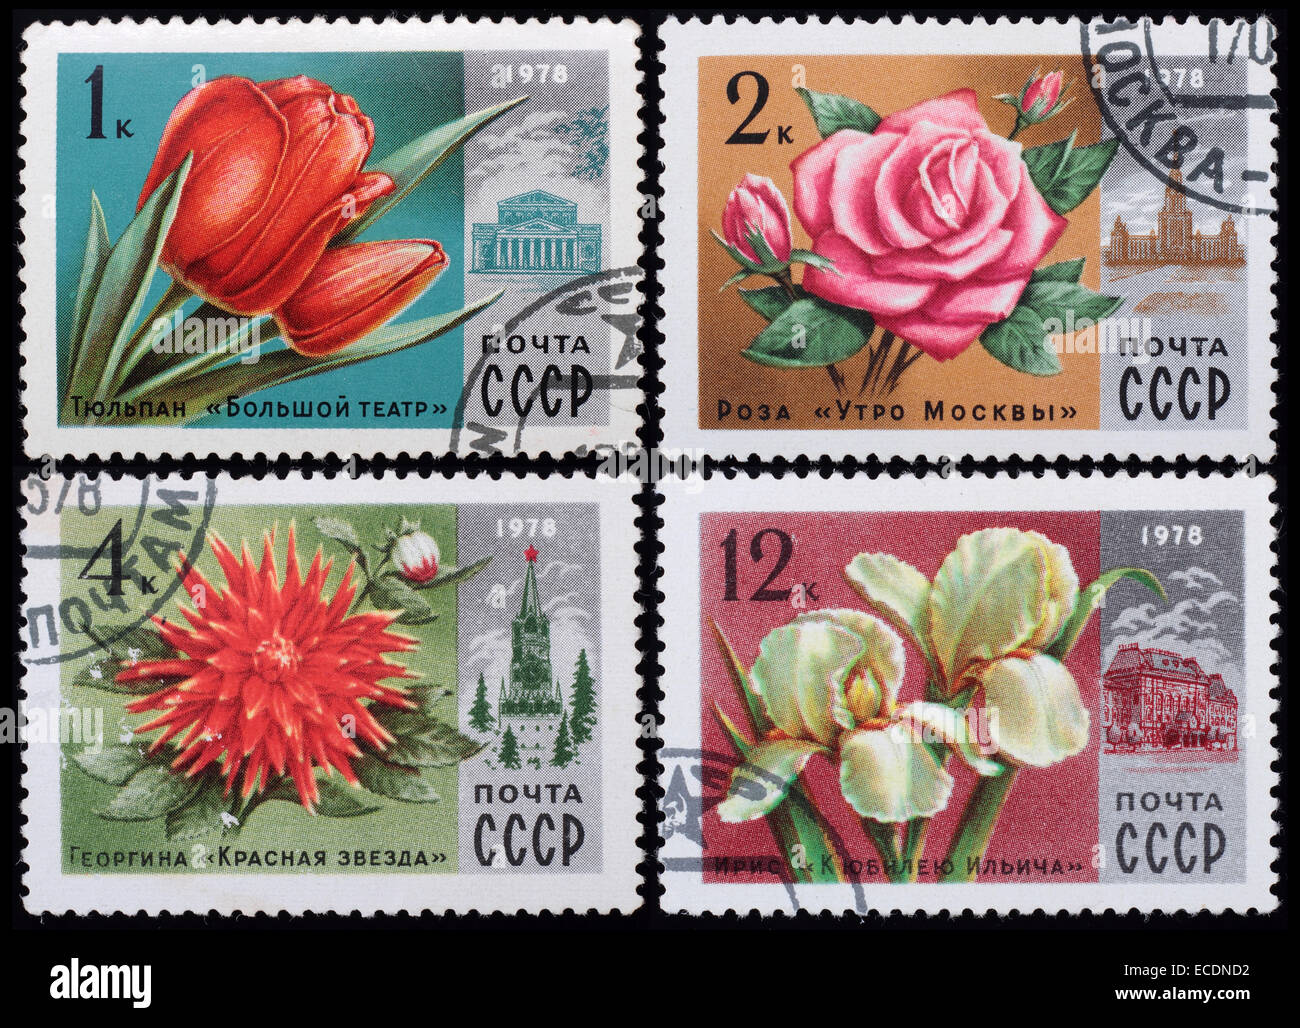 UdSSR - circa 1978: eine Briefmarke gedruckt im sowjetischen zeigt Bild von Blumen, Serie Blumen, ca. 1978. Stockfoto